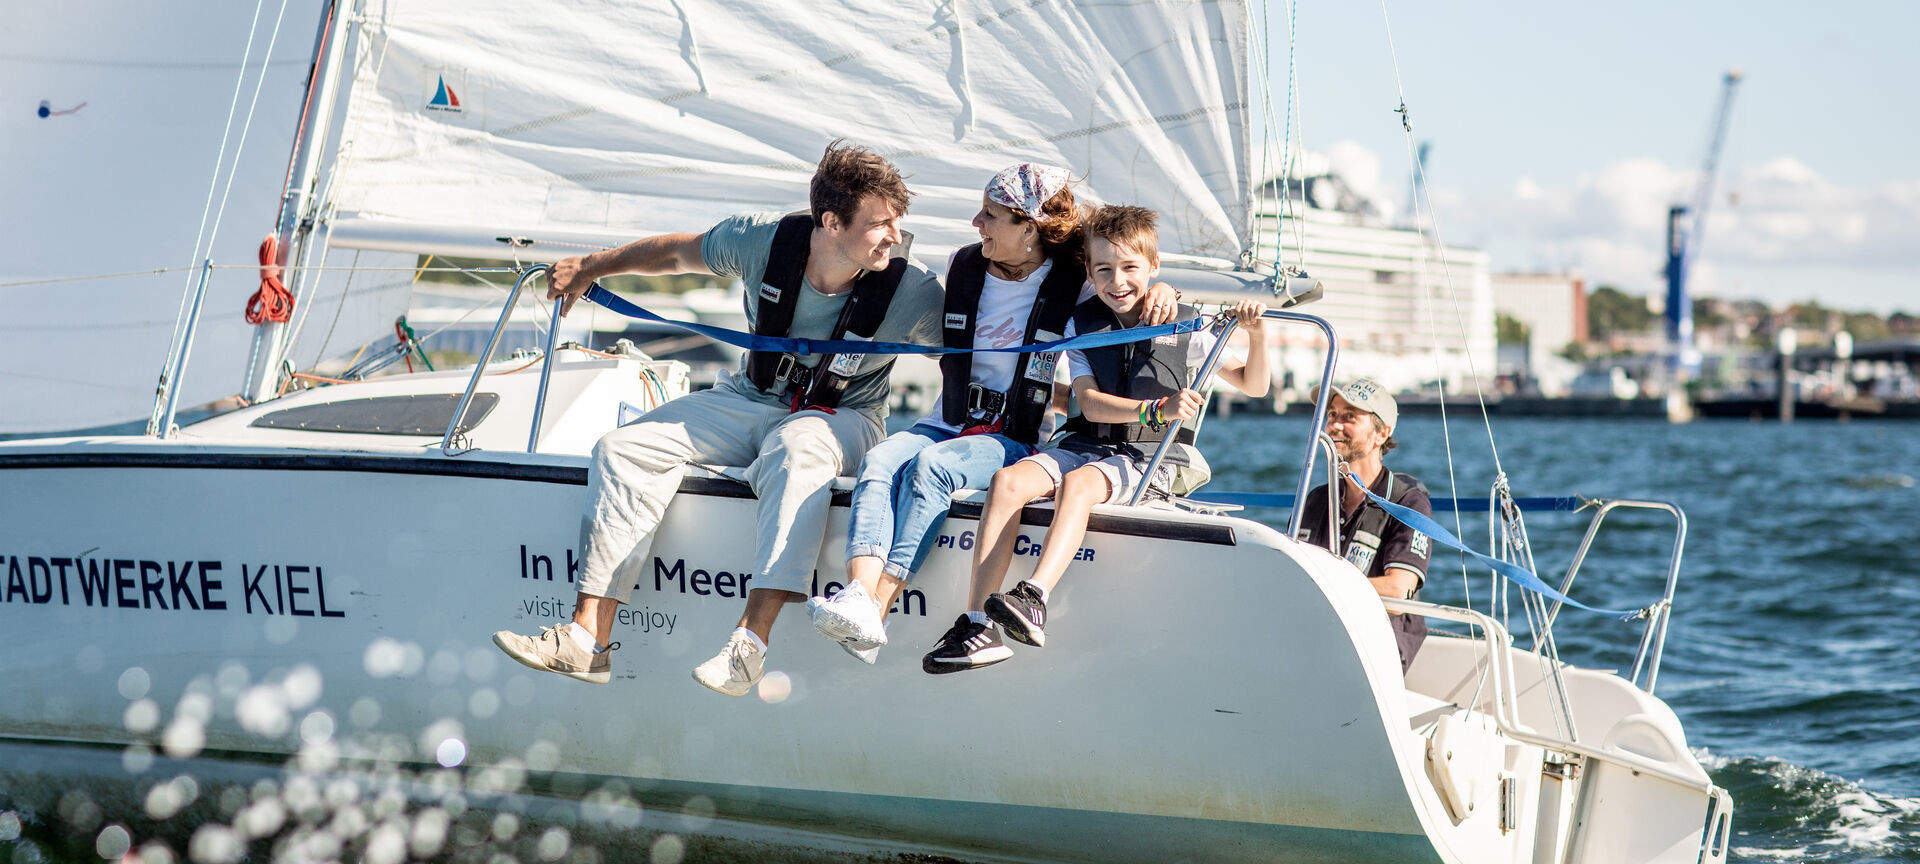 Familie segelt auf der Skippi Yacht in der Kieler Förde